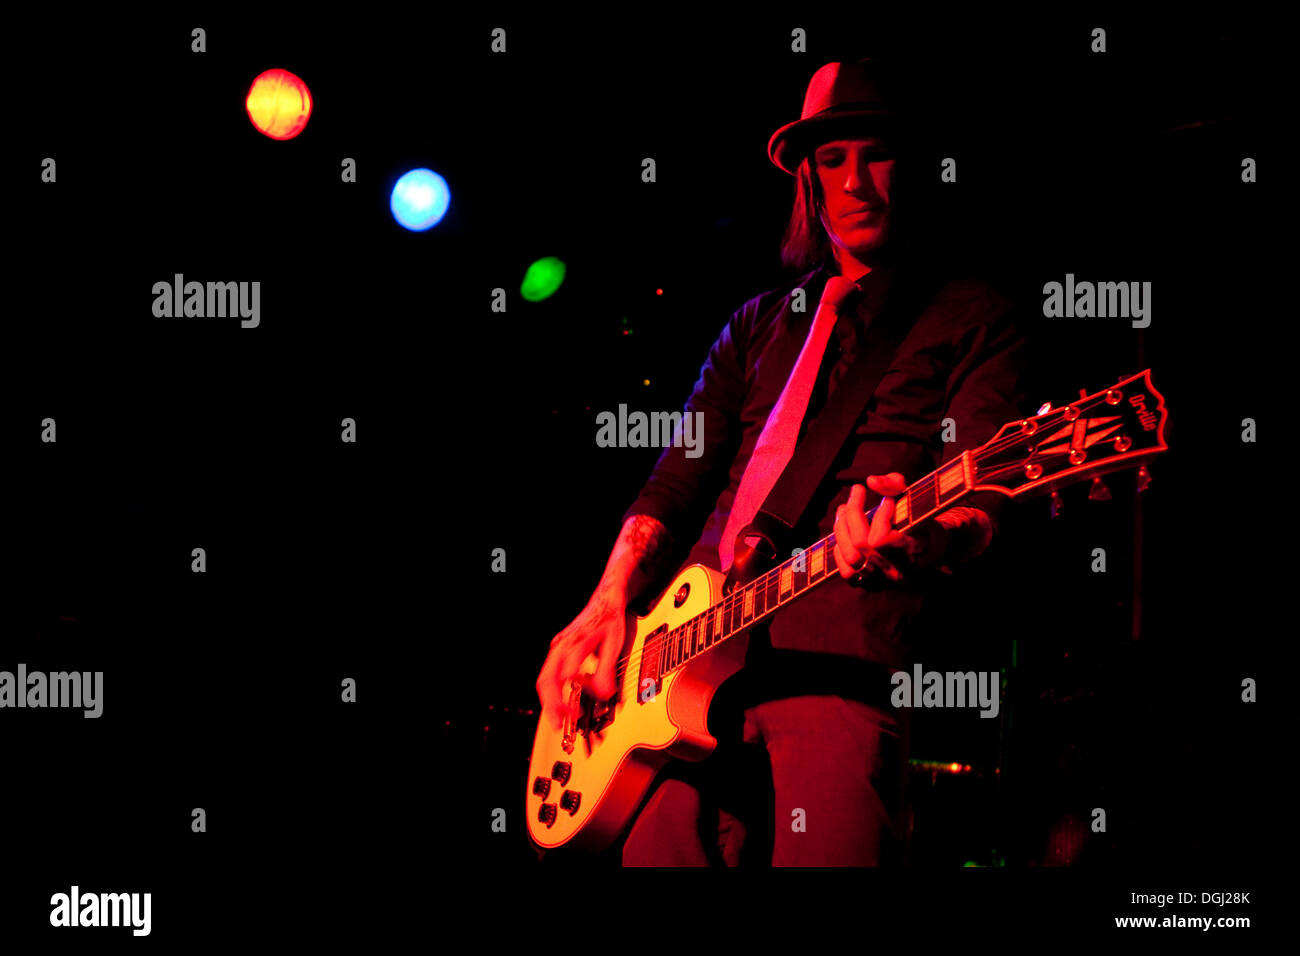 Rockabilly guitarist Banque de photographies et d'images à haute résolution  - Alamy